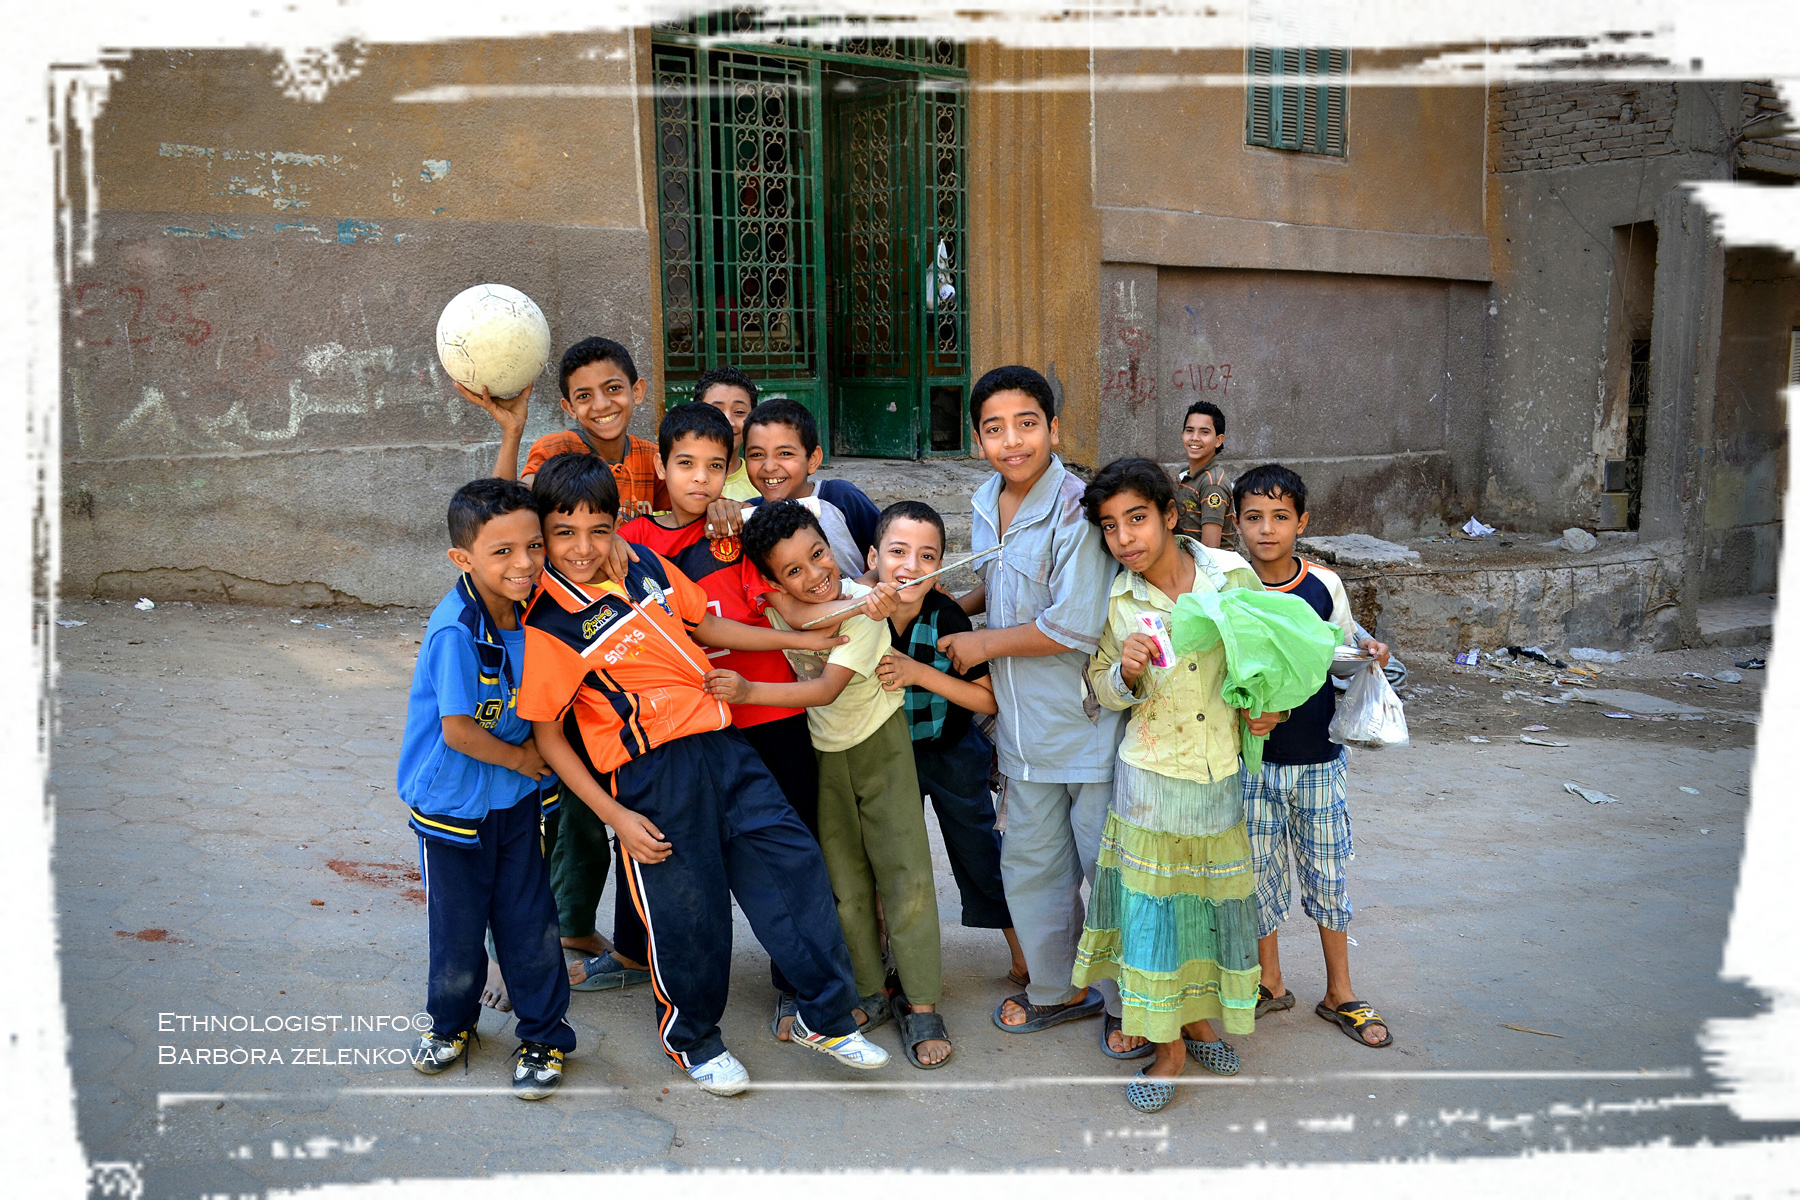 Ačkoliv děti v chudinských čtvrtí vyrůstají v chudobě, září štěstím a nadšením. Foto: Barbora Zelenková, Garbage City, Káhira, 2011.